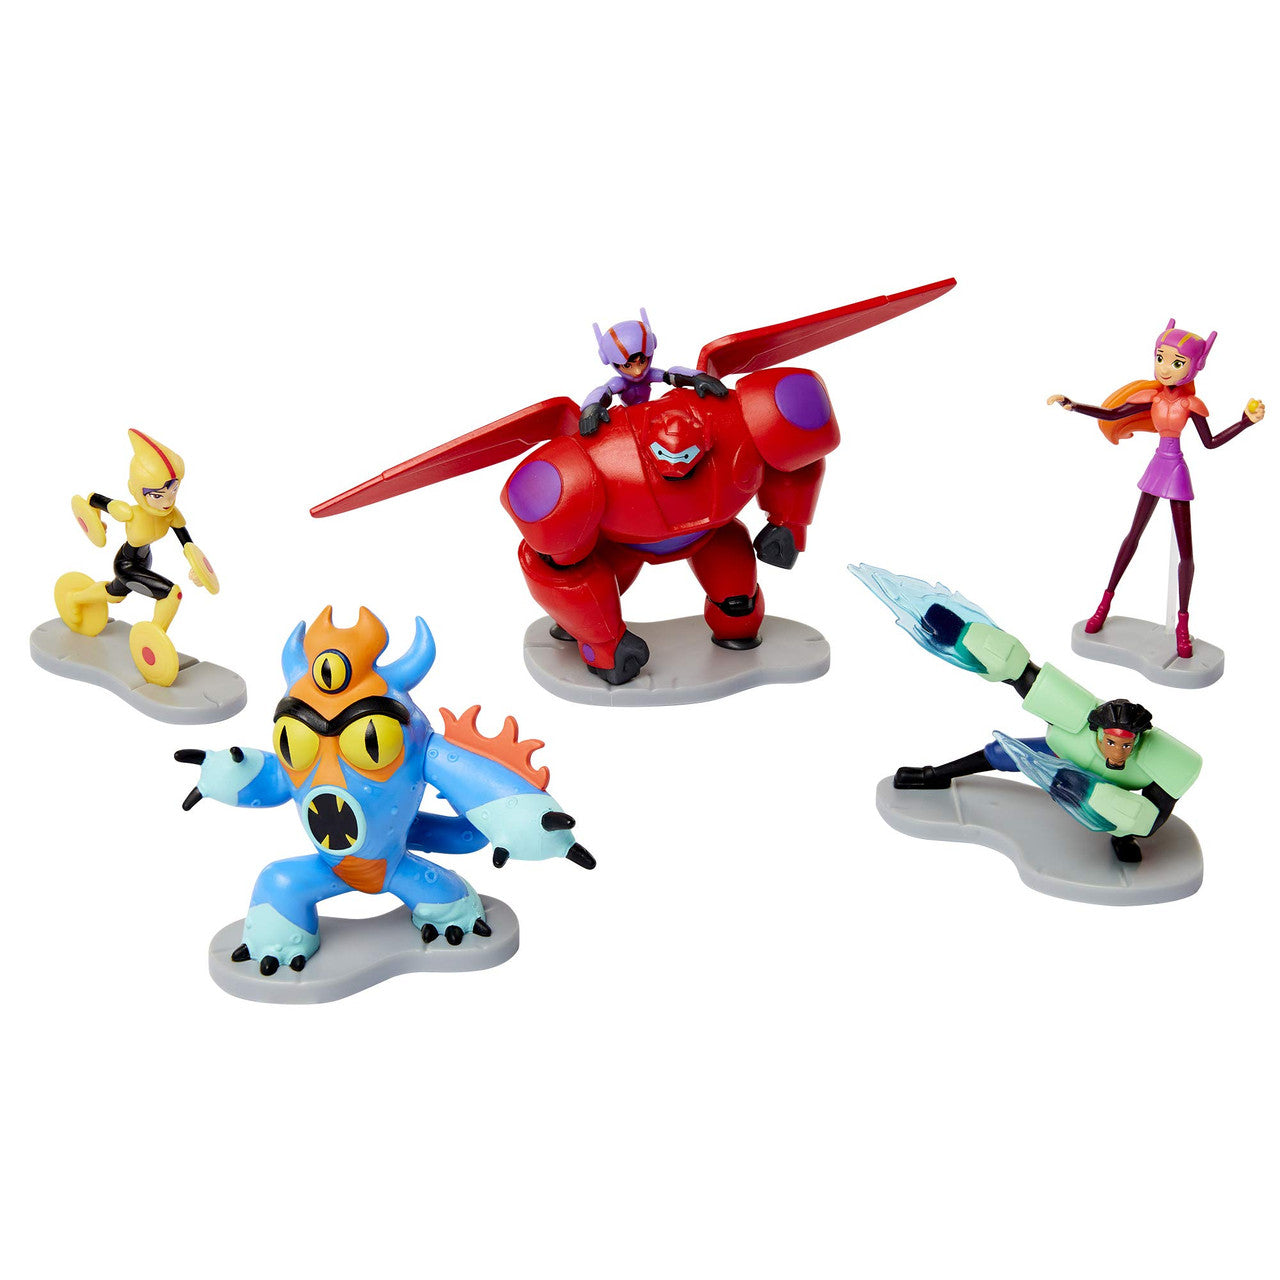 Disney Big Hero 6 Figurine Set